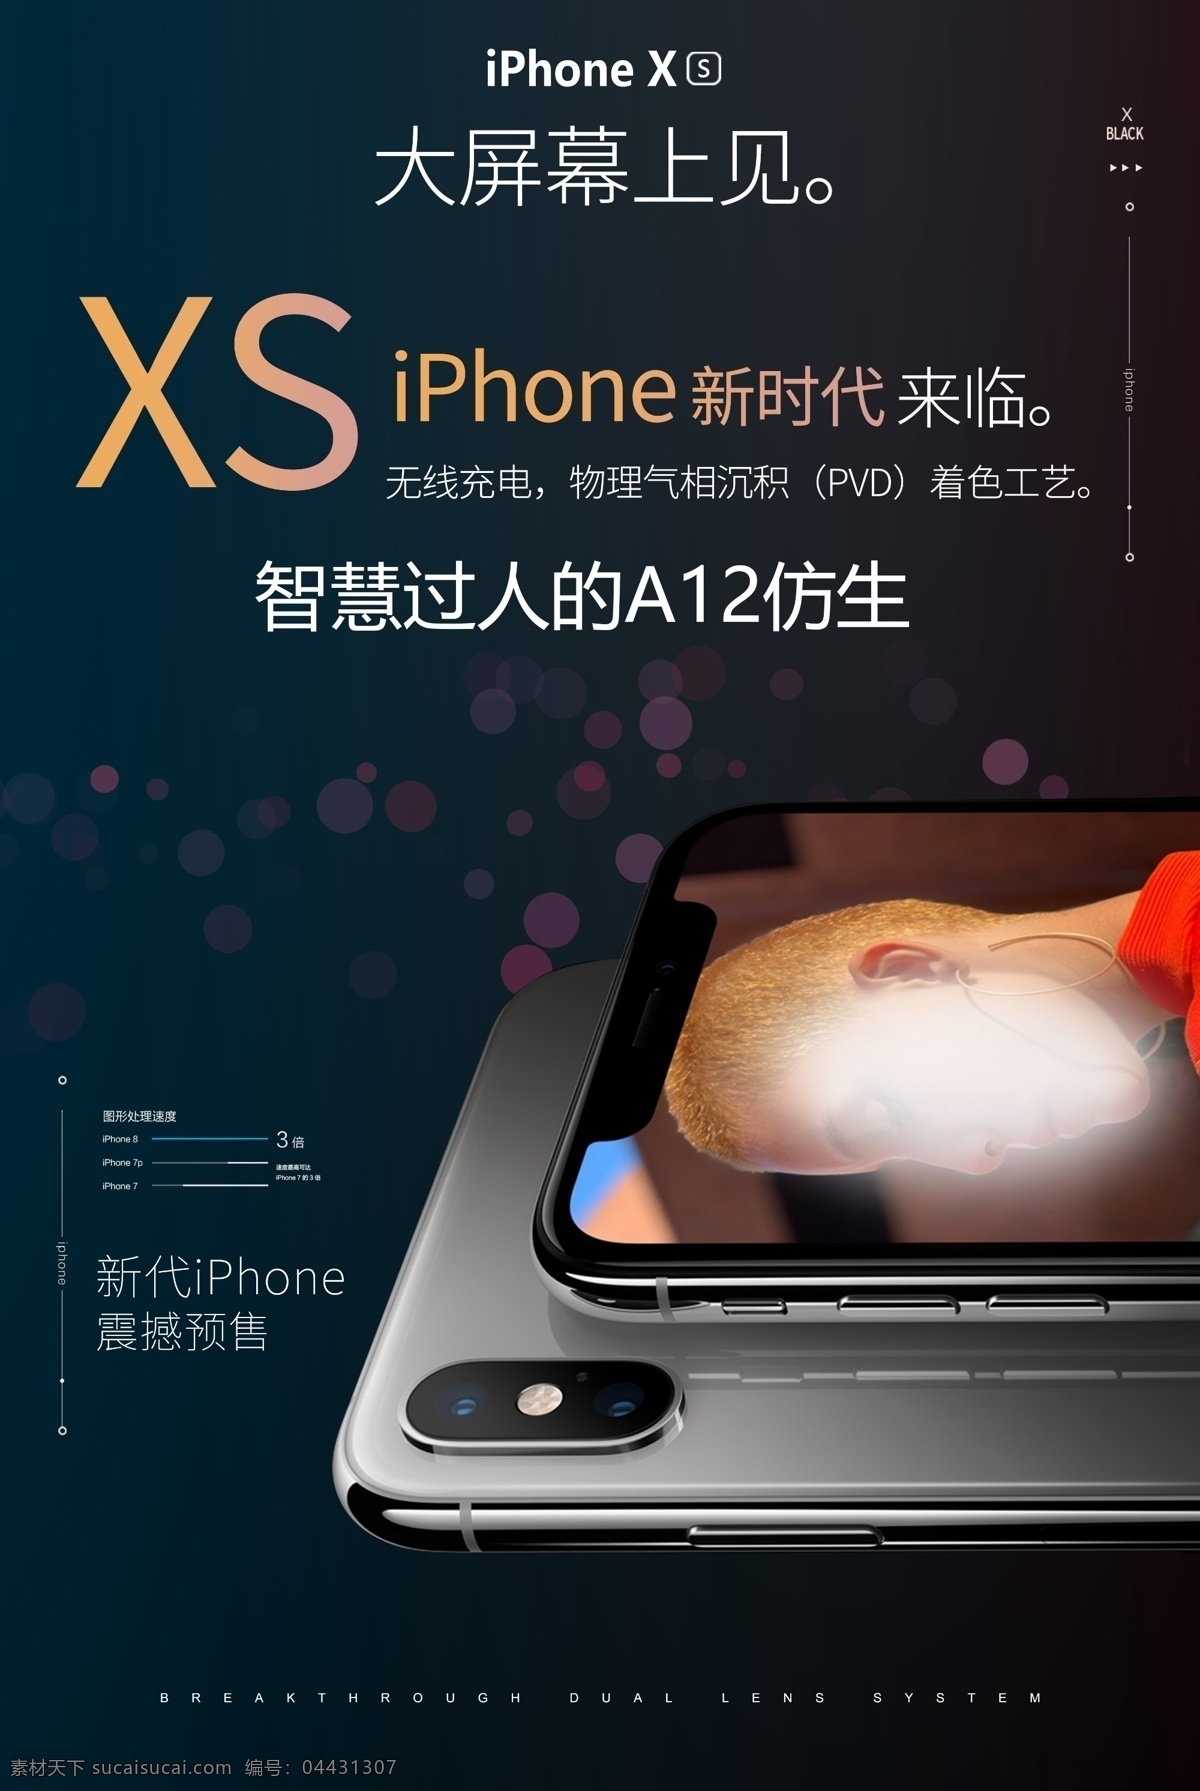 苹果手机 iphone xs 苹果发布会 预售 苹果xs 易拉宝 海报 苹果海报 苹果易拉宝 物料 展架 预定展架 果发布会 预售海报 iphonexs 手机海报